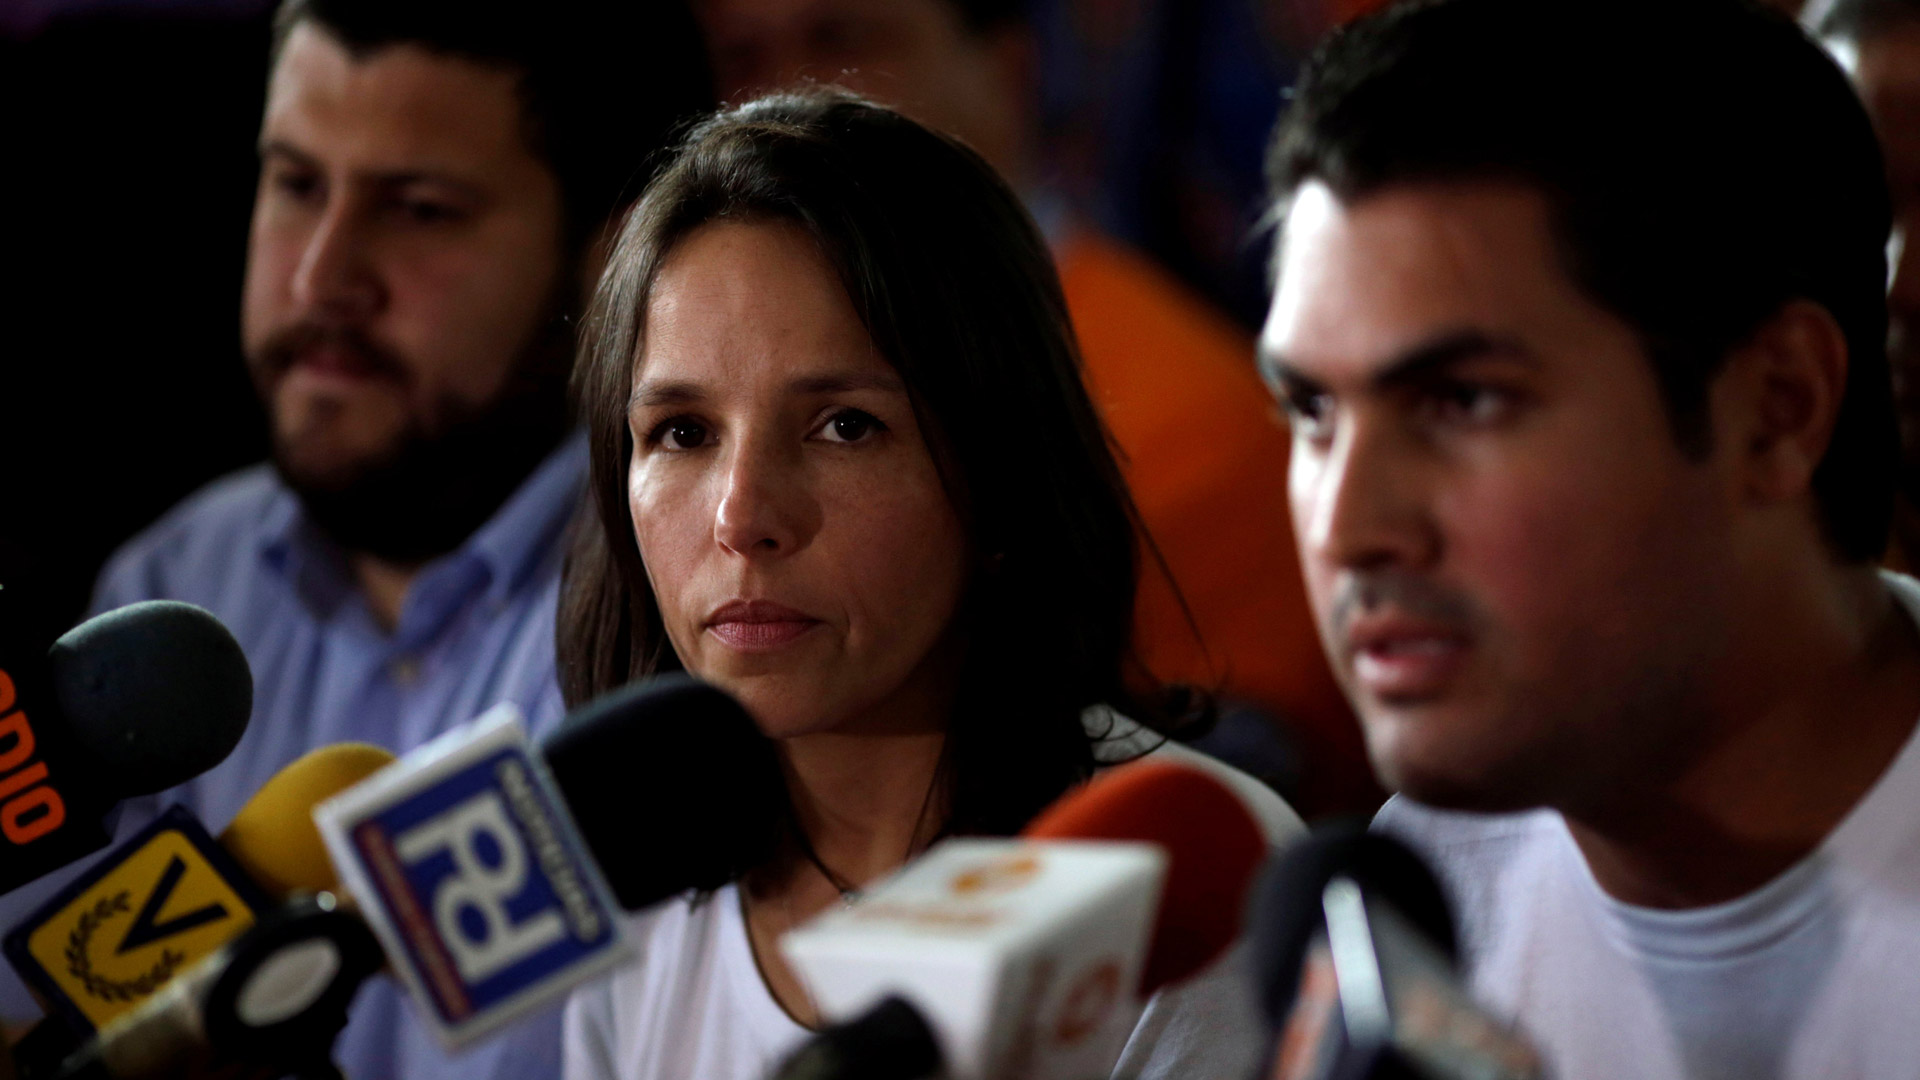 La familia de Ledezma denuncia un "allanamiento" en su casa